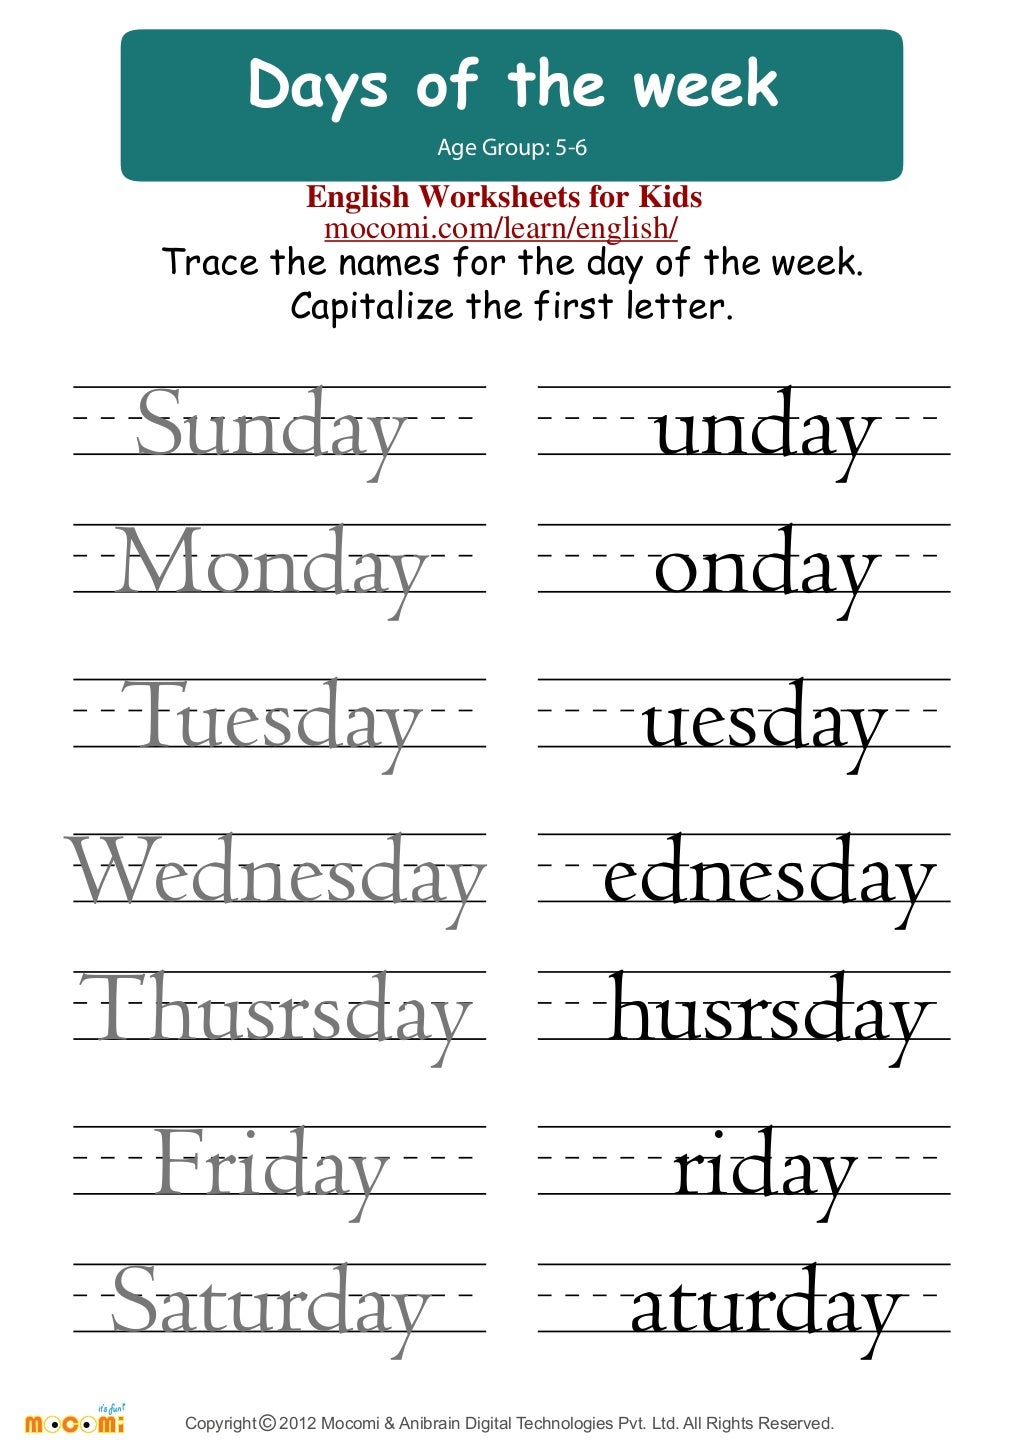 printable-days-of-the-week-worksheets